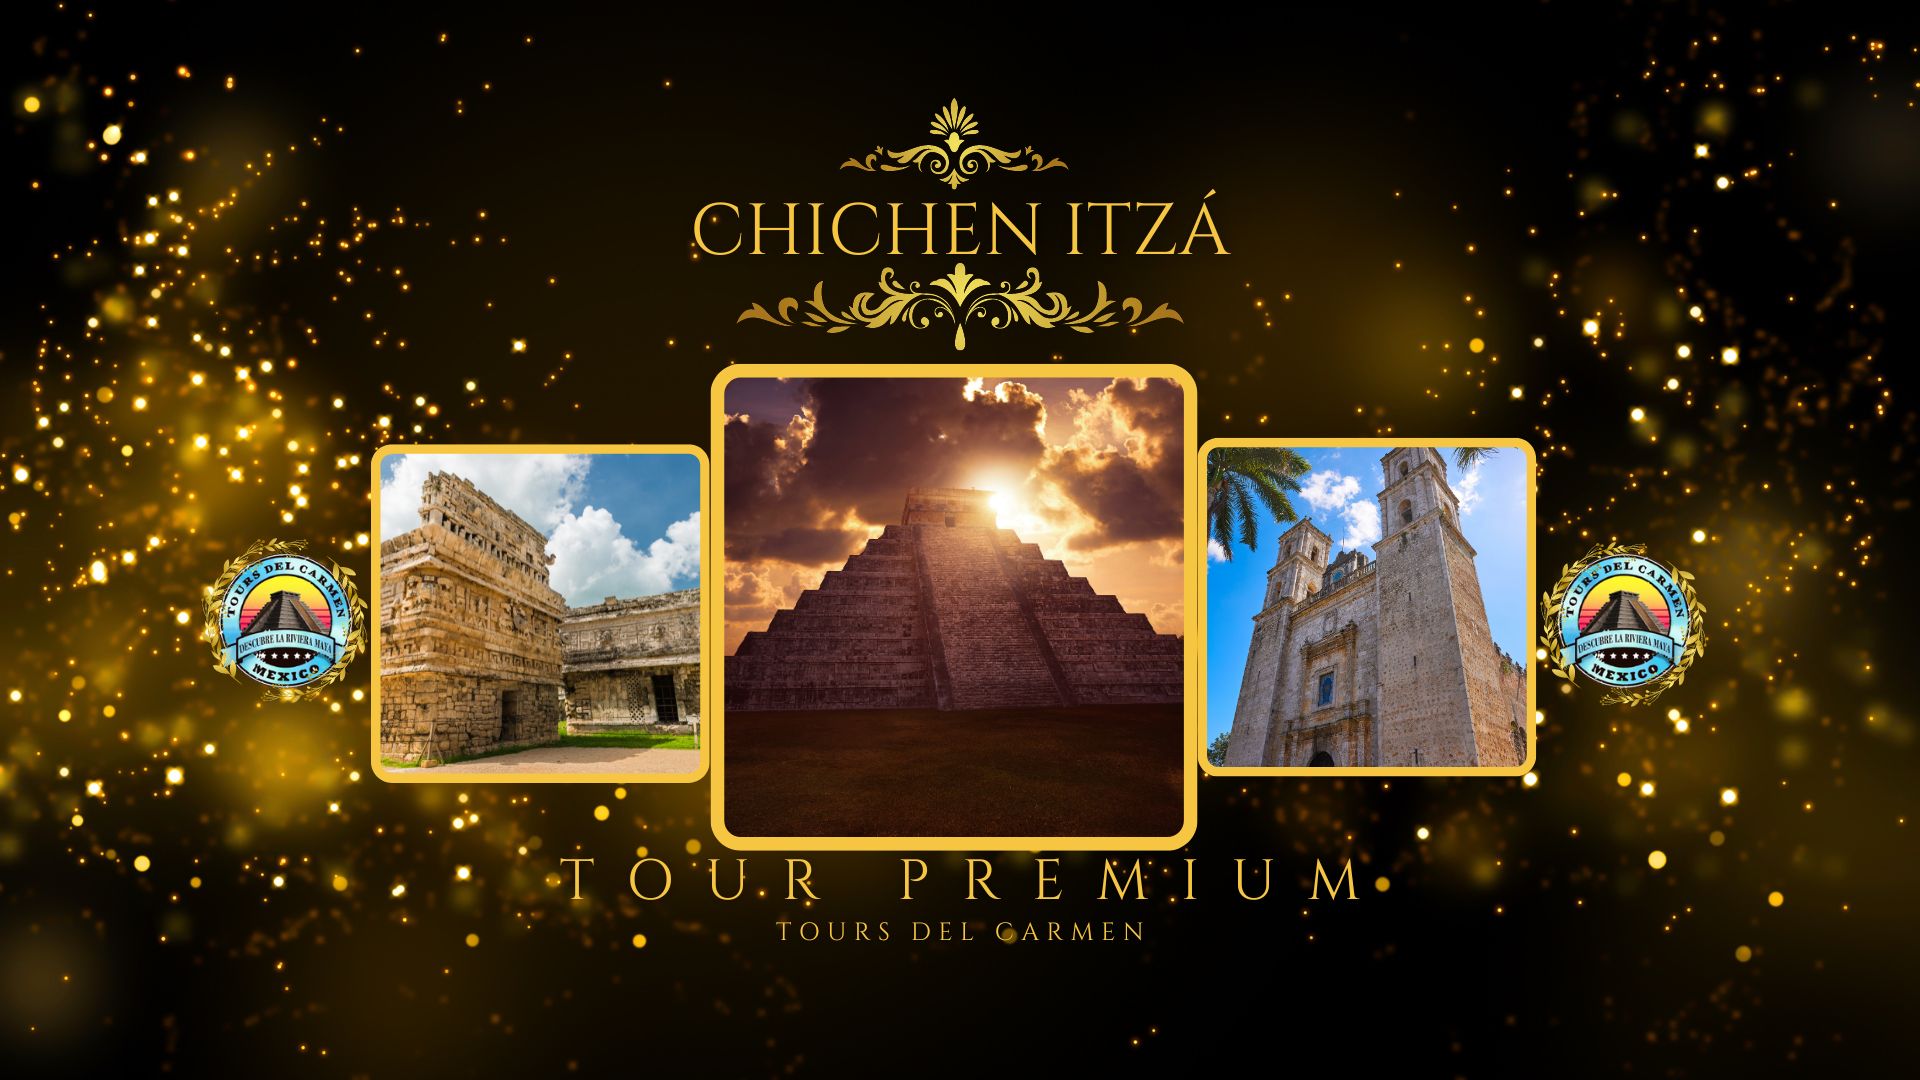 Tour Premium Chichen Itzá